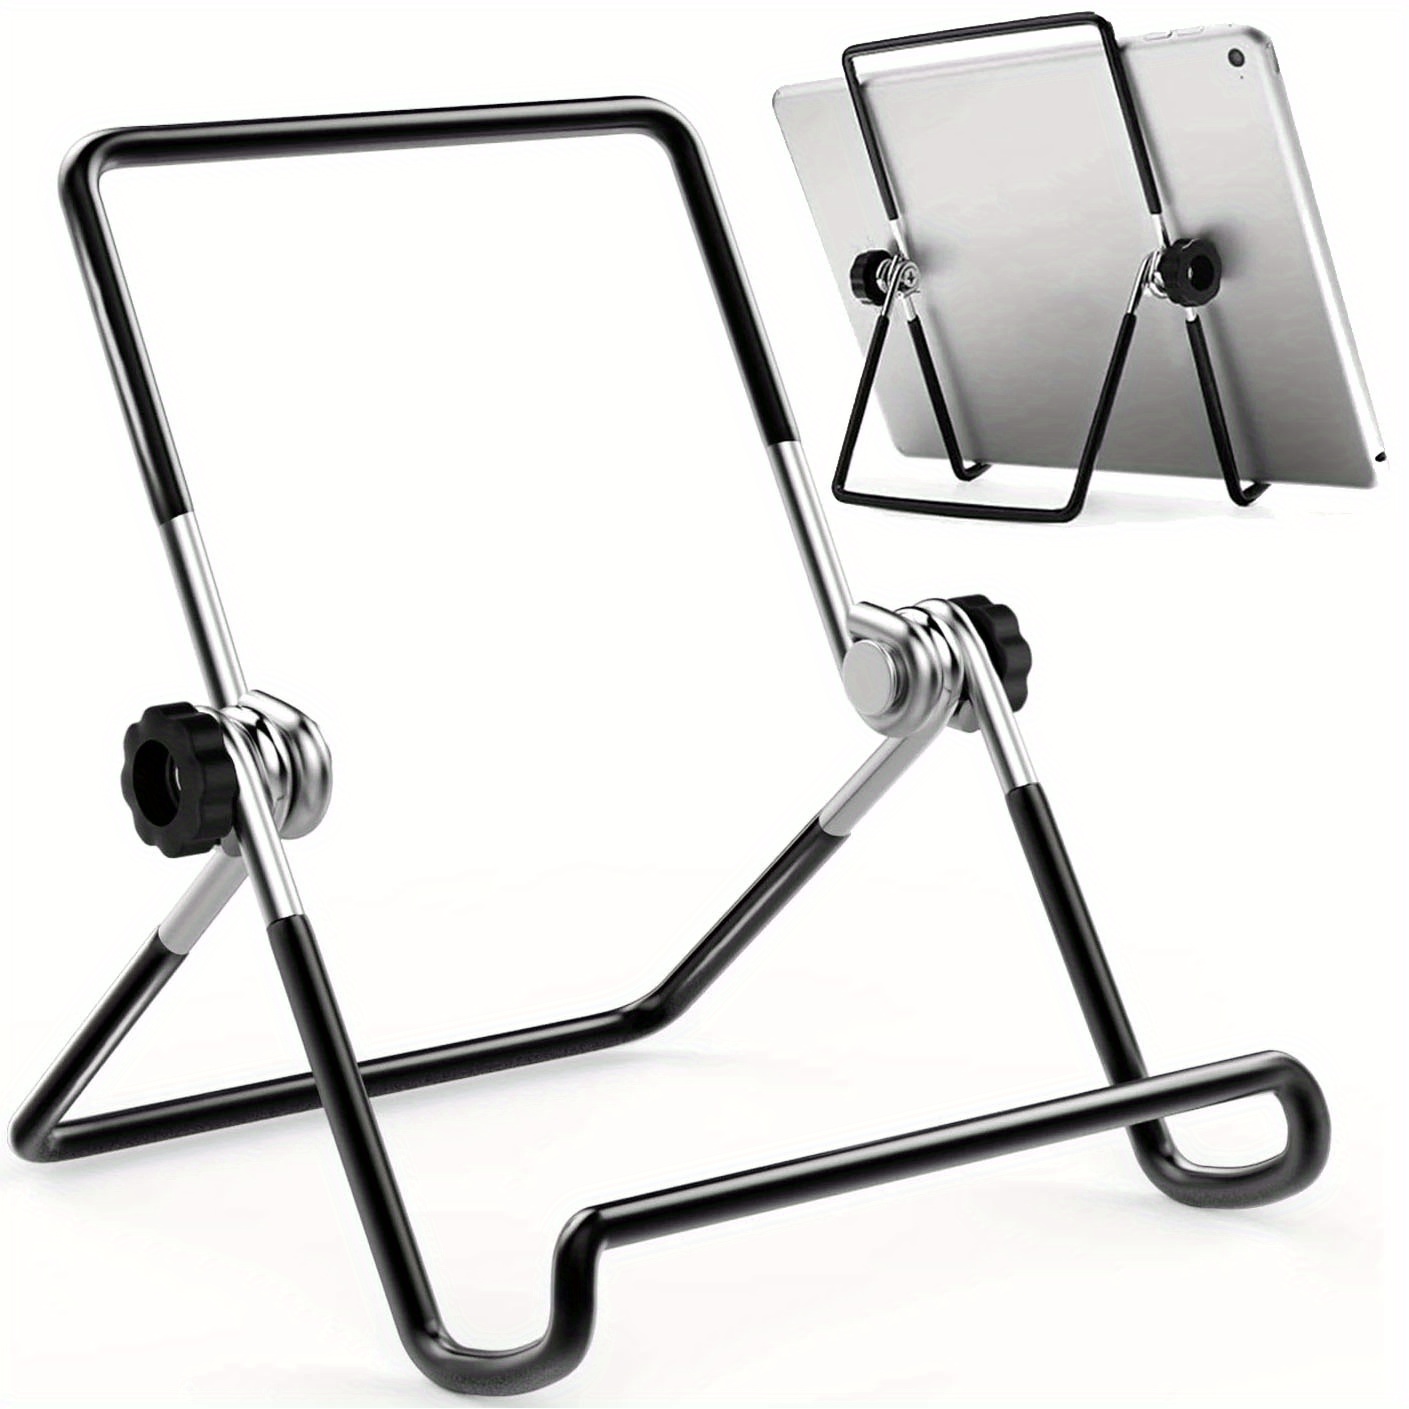 

Portable Metal Foldable Adjustable Phone Tablet Stand, Desktop Holder Mount Adjustable Desk Support Flexible Phone Stand